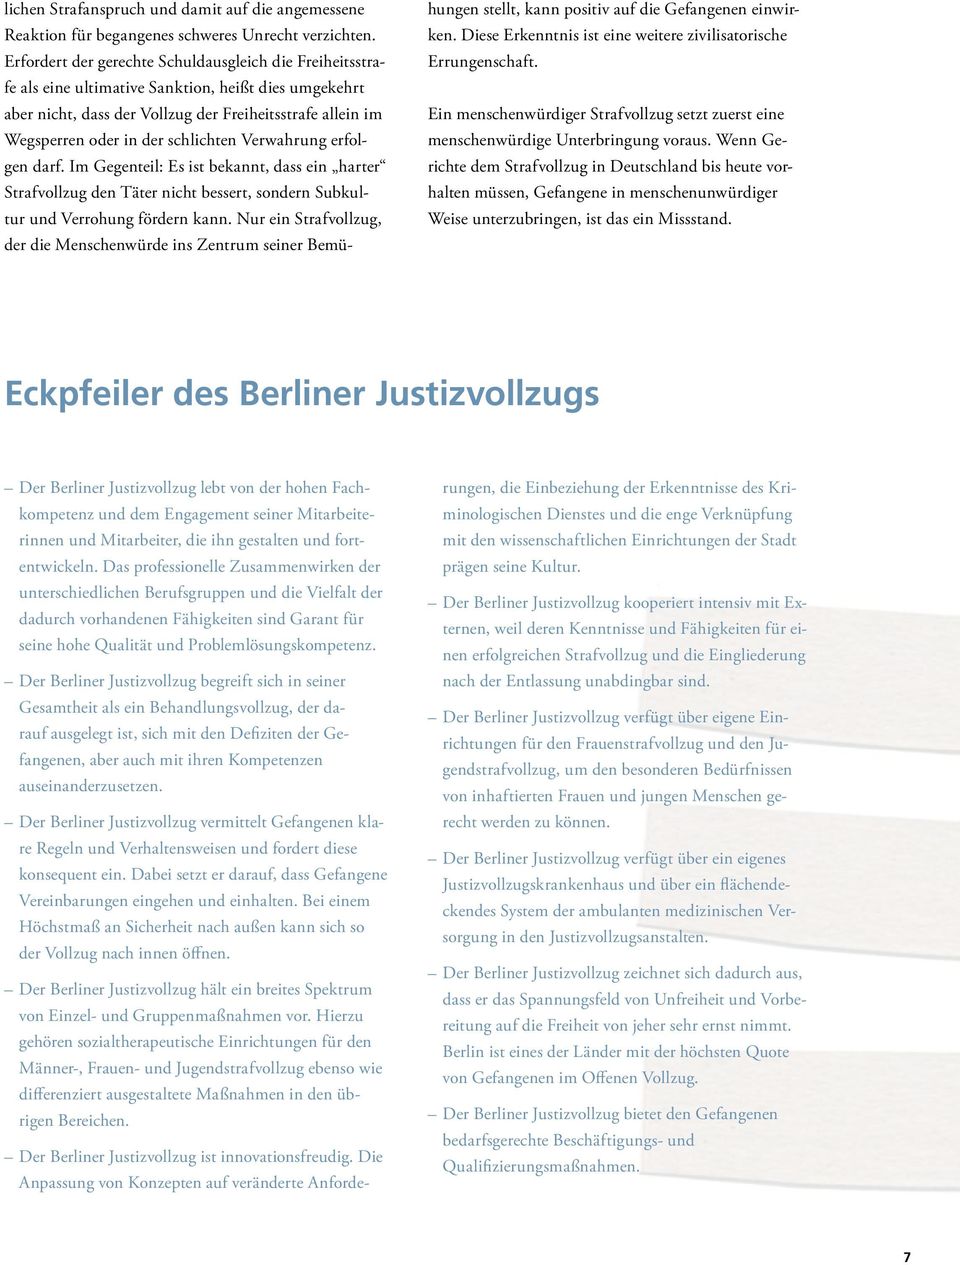 Der Berliner Justizvollzug begreift sich in seiner Gesamtheit als ein Behandlungsvollzug, der darauf ausgelegt ist, sich mit den Defiziten der Gefangenen, aber auch mit ihren Kompetenzen